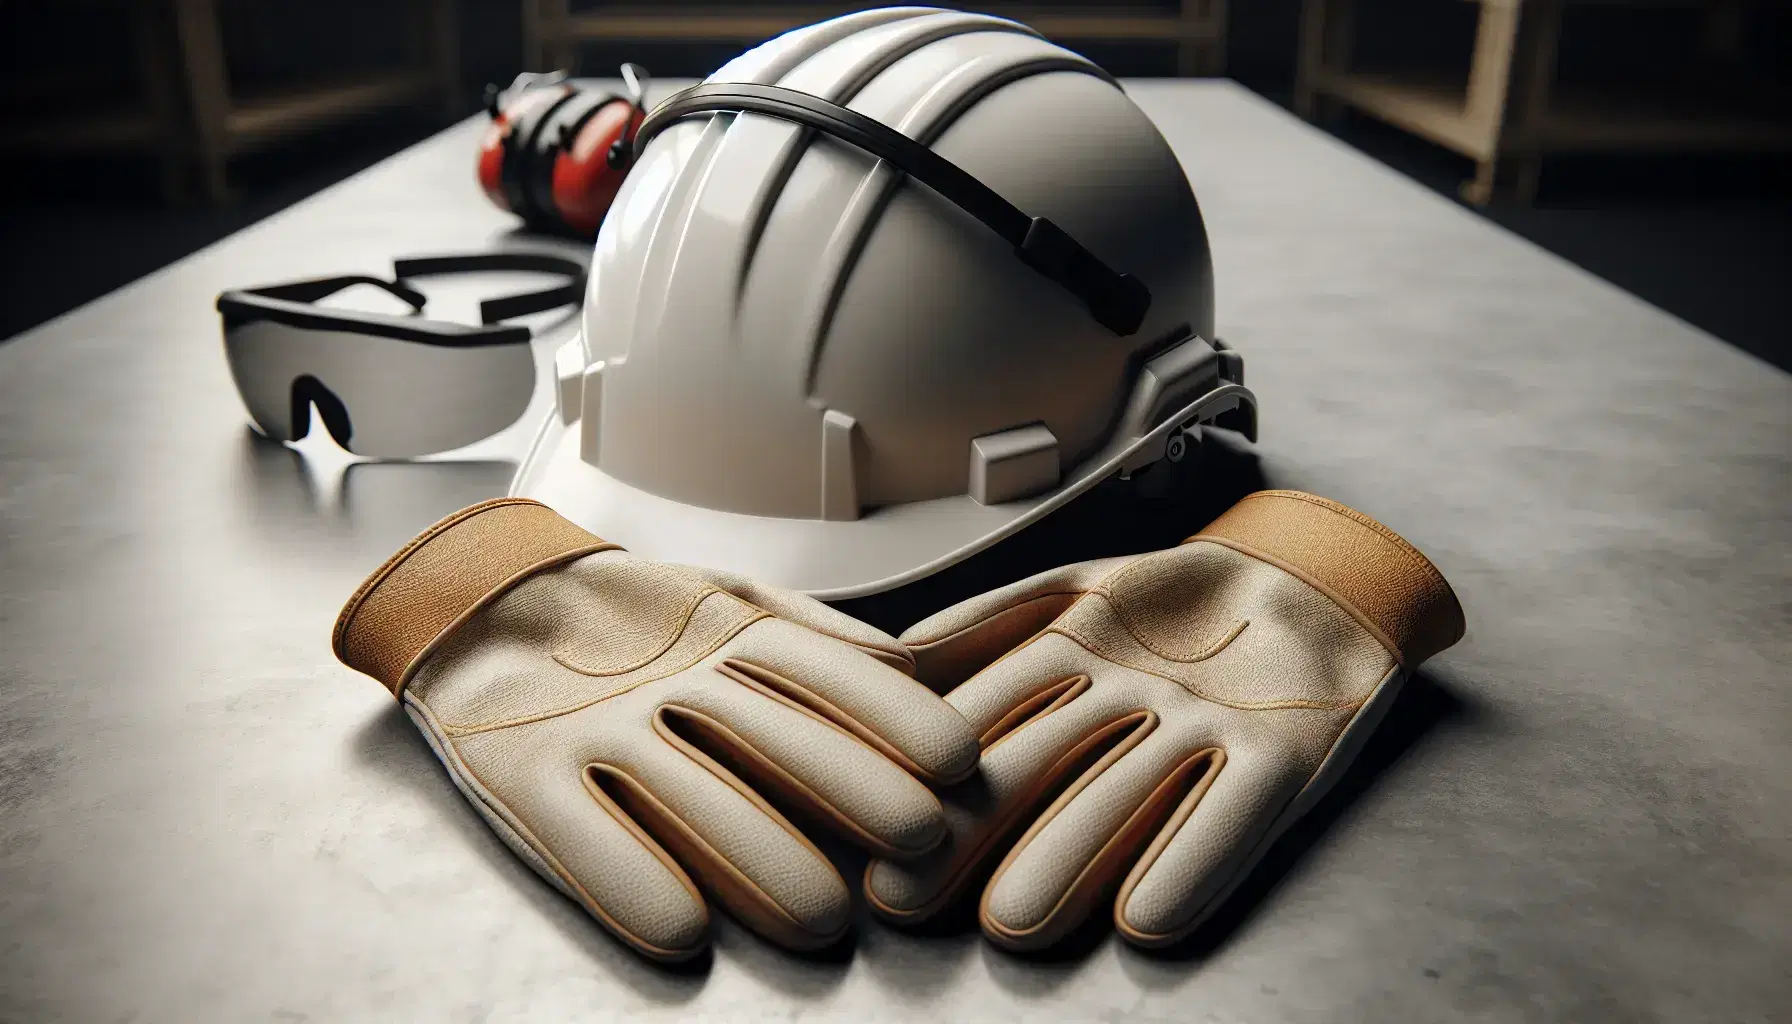 Casco de seguridad blanco, guantes de trabajo de cuero y gafas protectoras sobre superficie gris con figura humana al fondo usando chaleco reflectante.